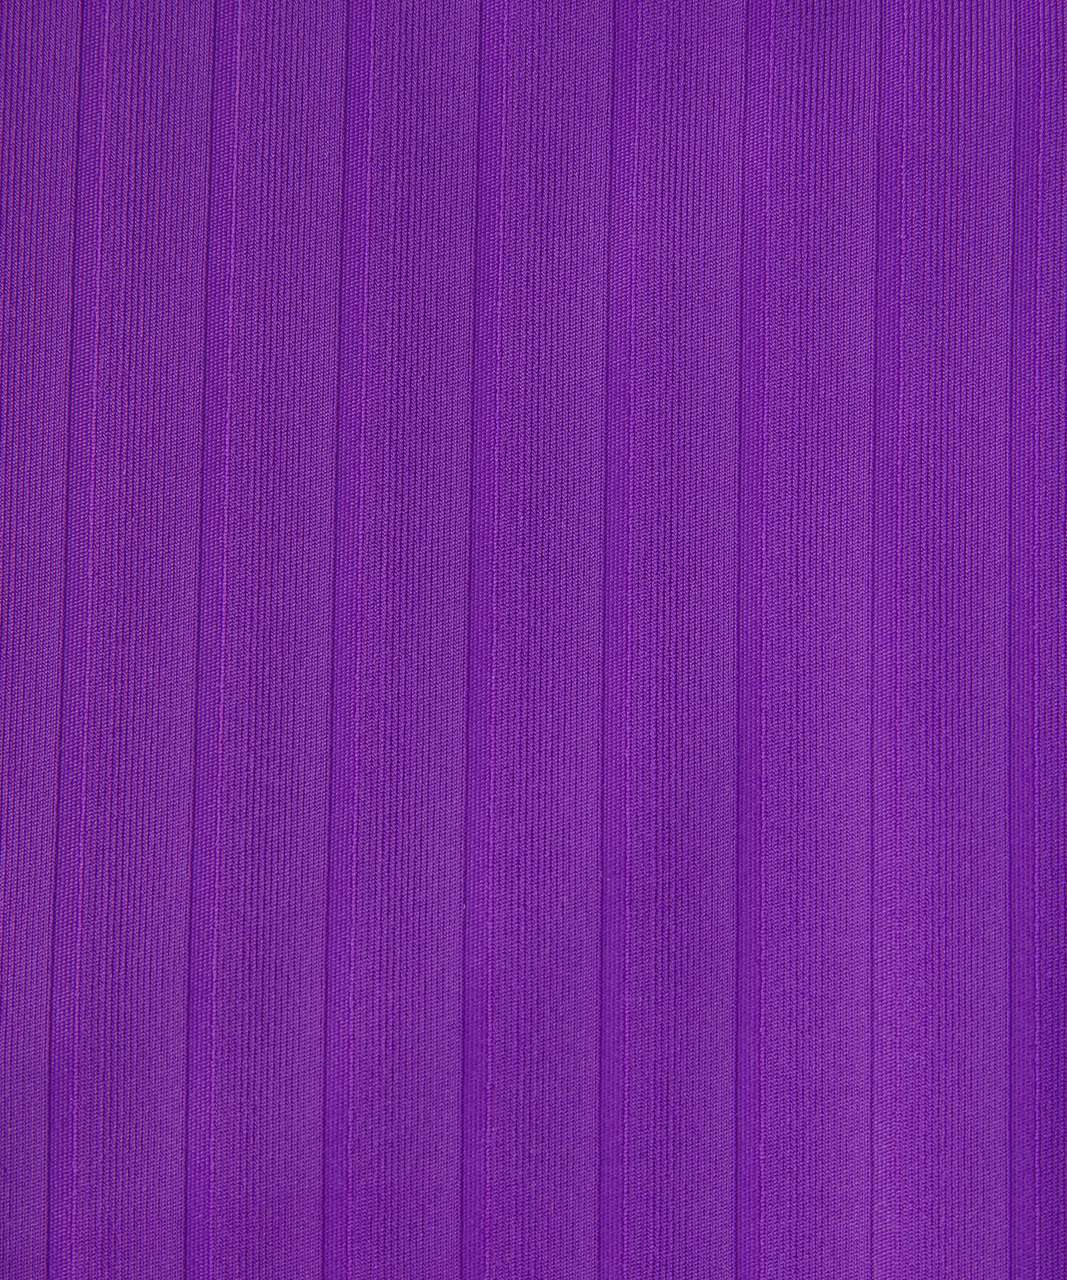 Lululemon V-Neck Ribbed One-Piece Swimsuit - Atomic Purple